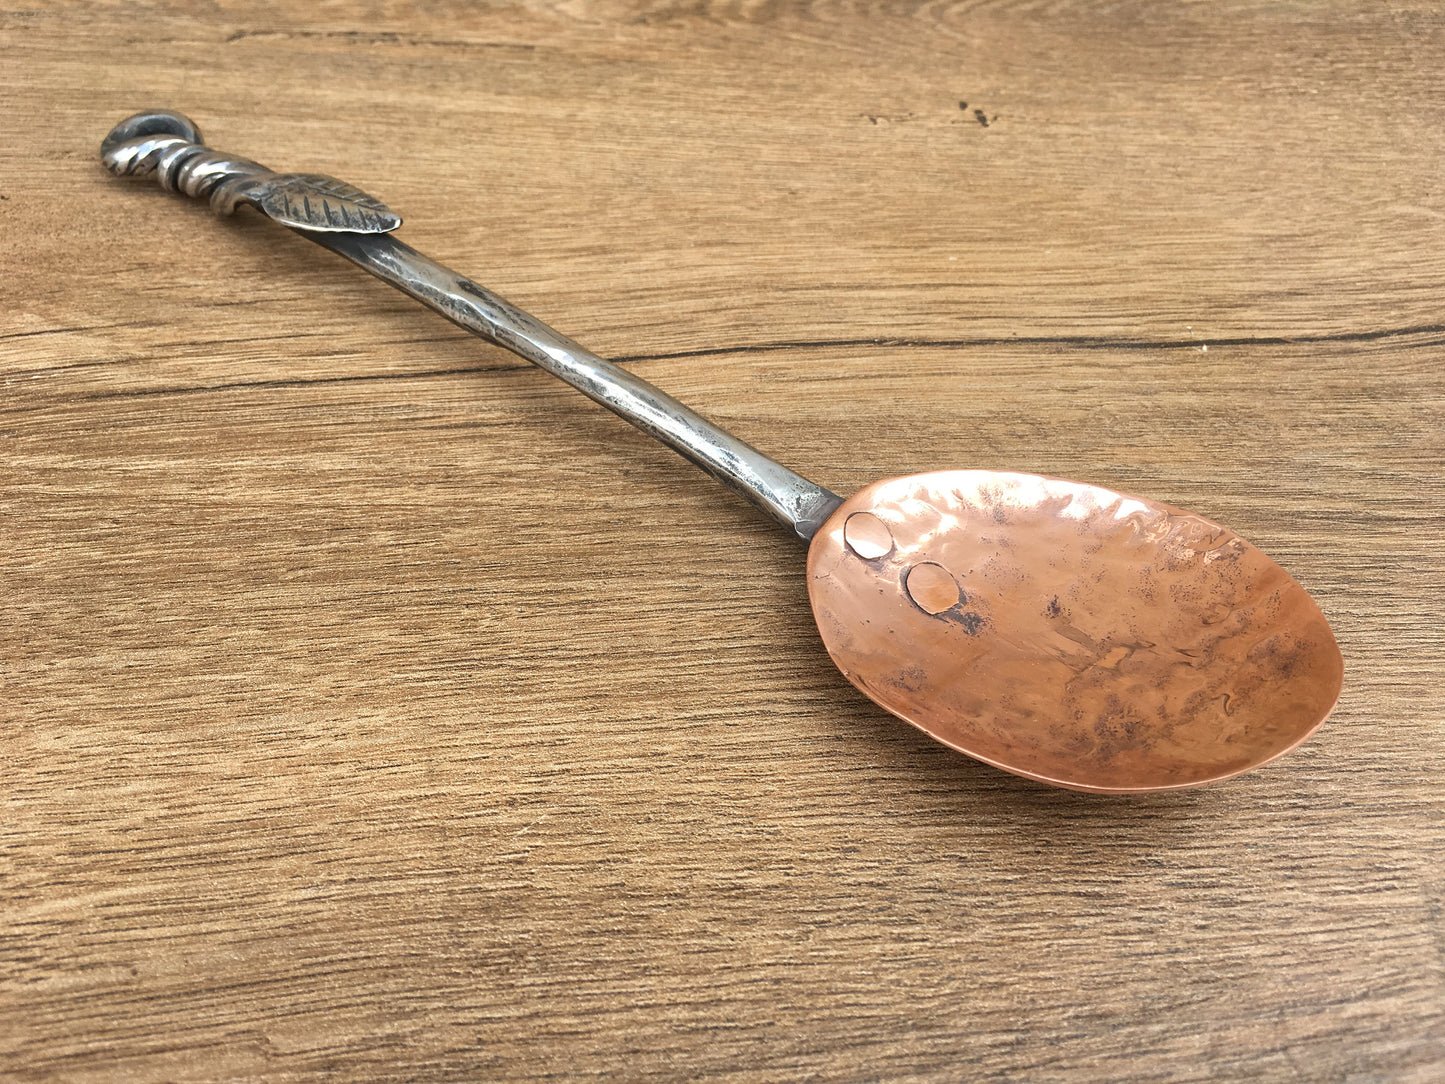 Medieval spoon, mid century spoon, copper spoon, viking spoon, medieval cutlery, viking cutlery,mid century cutlery,medieval flatware, spoon